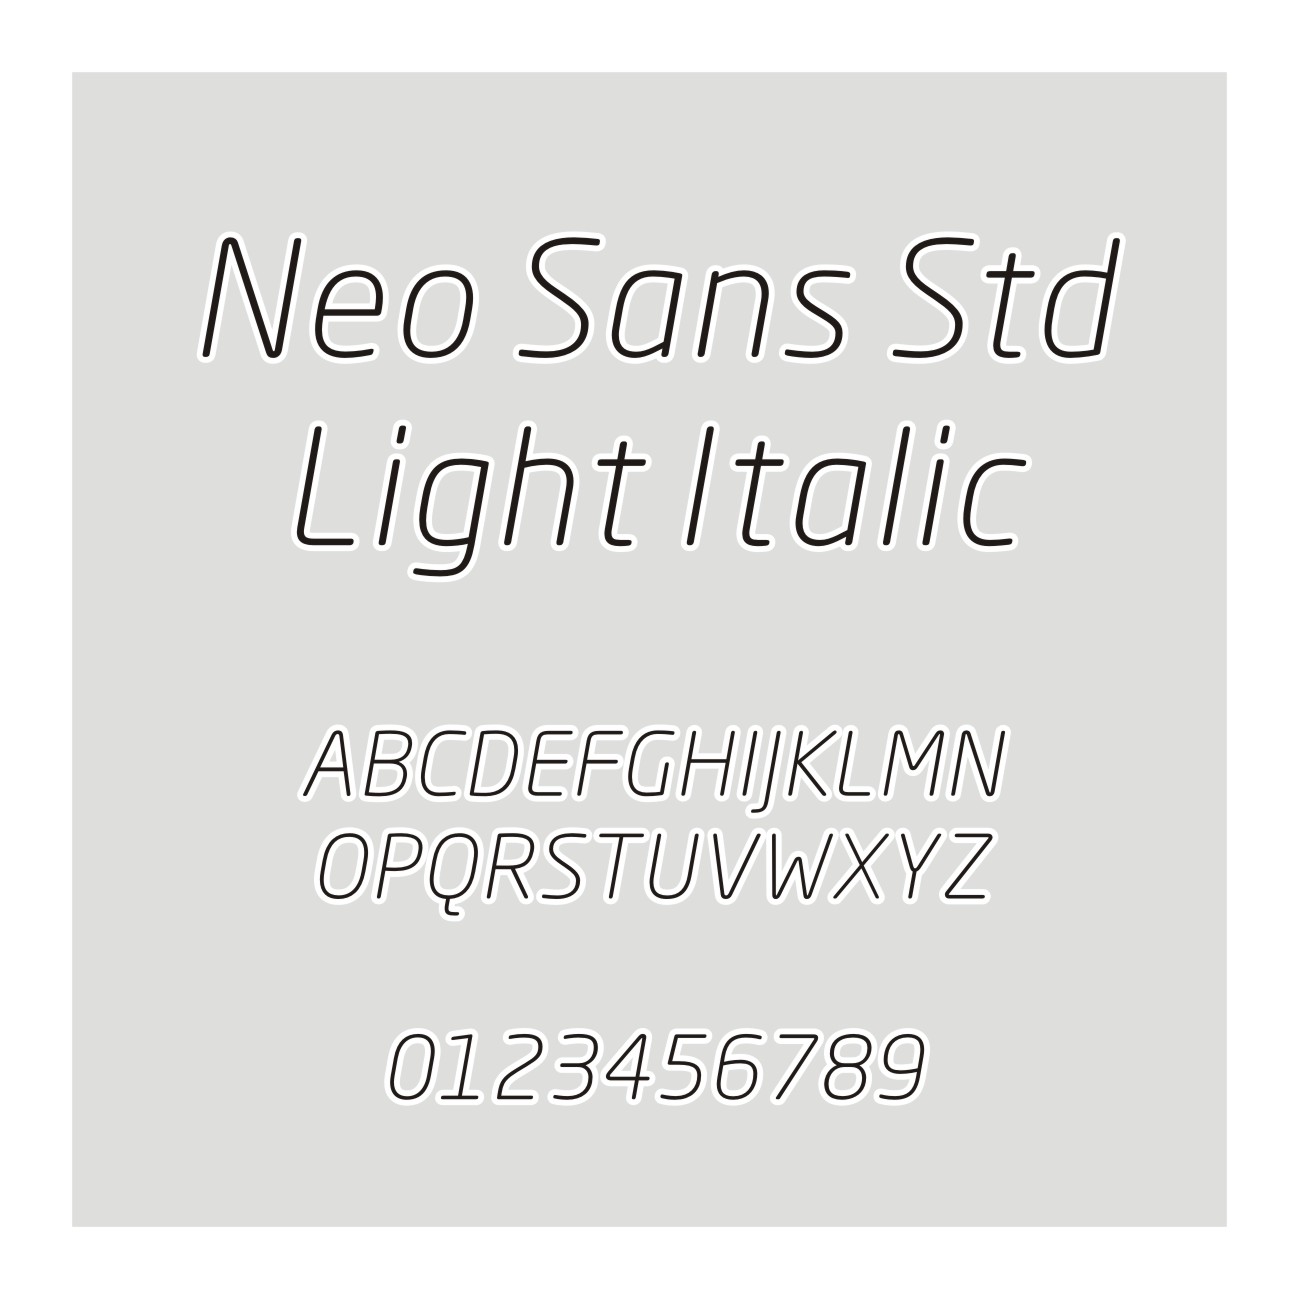 Neo Sans Std Light Italic